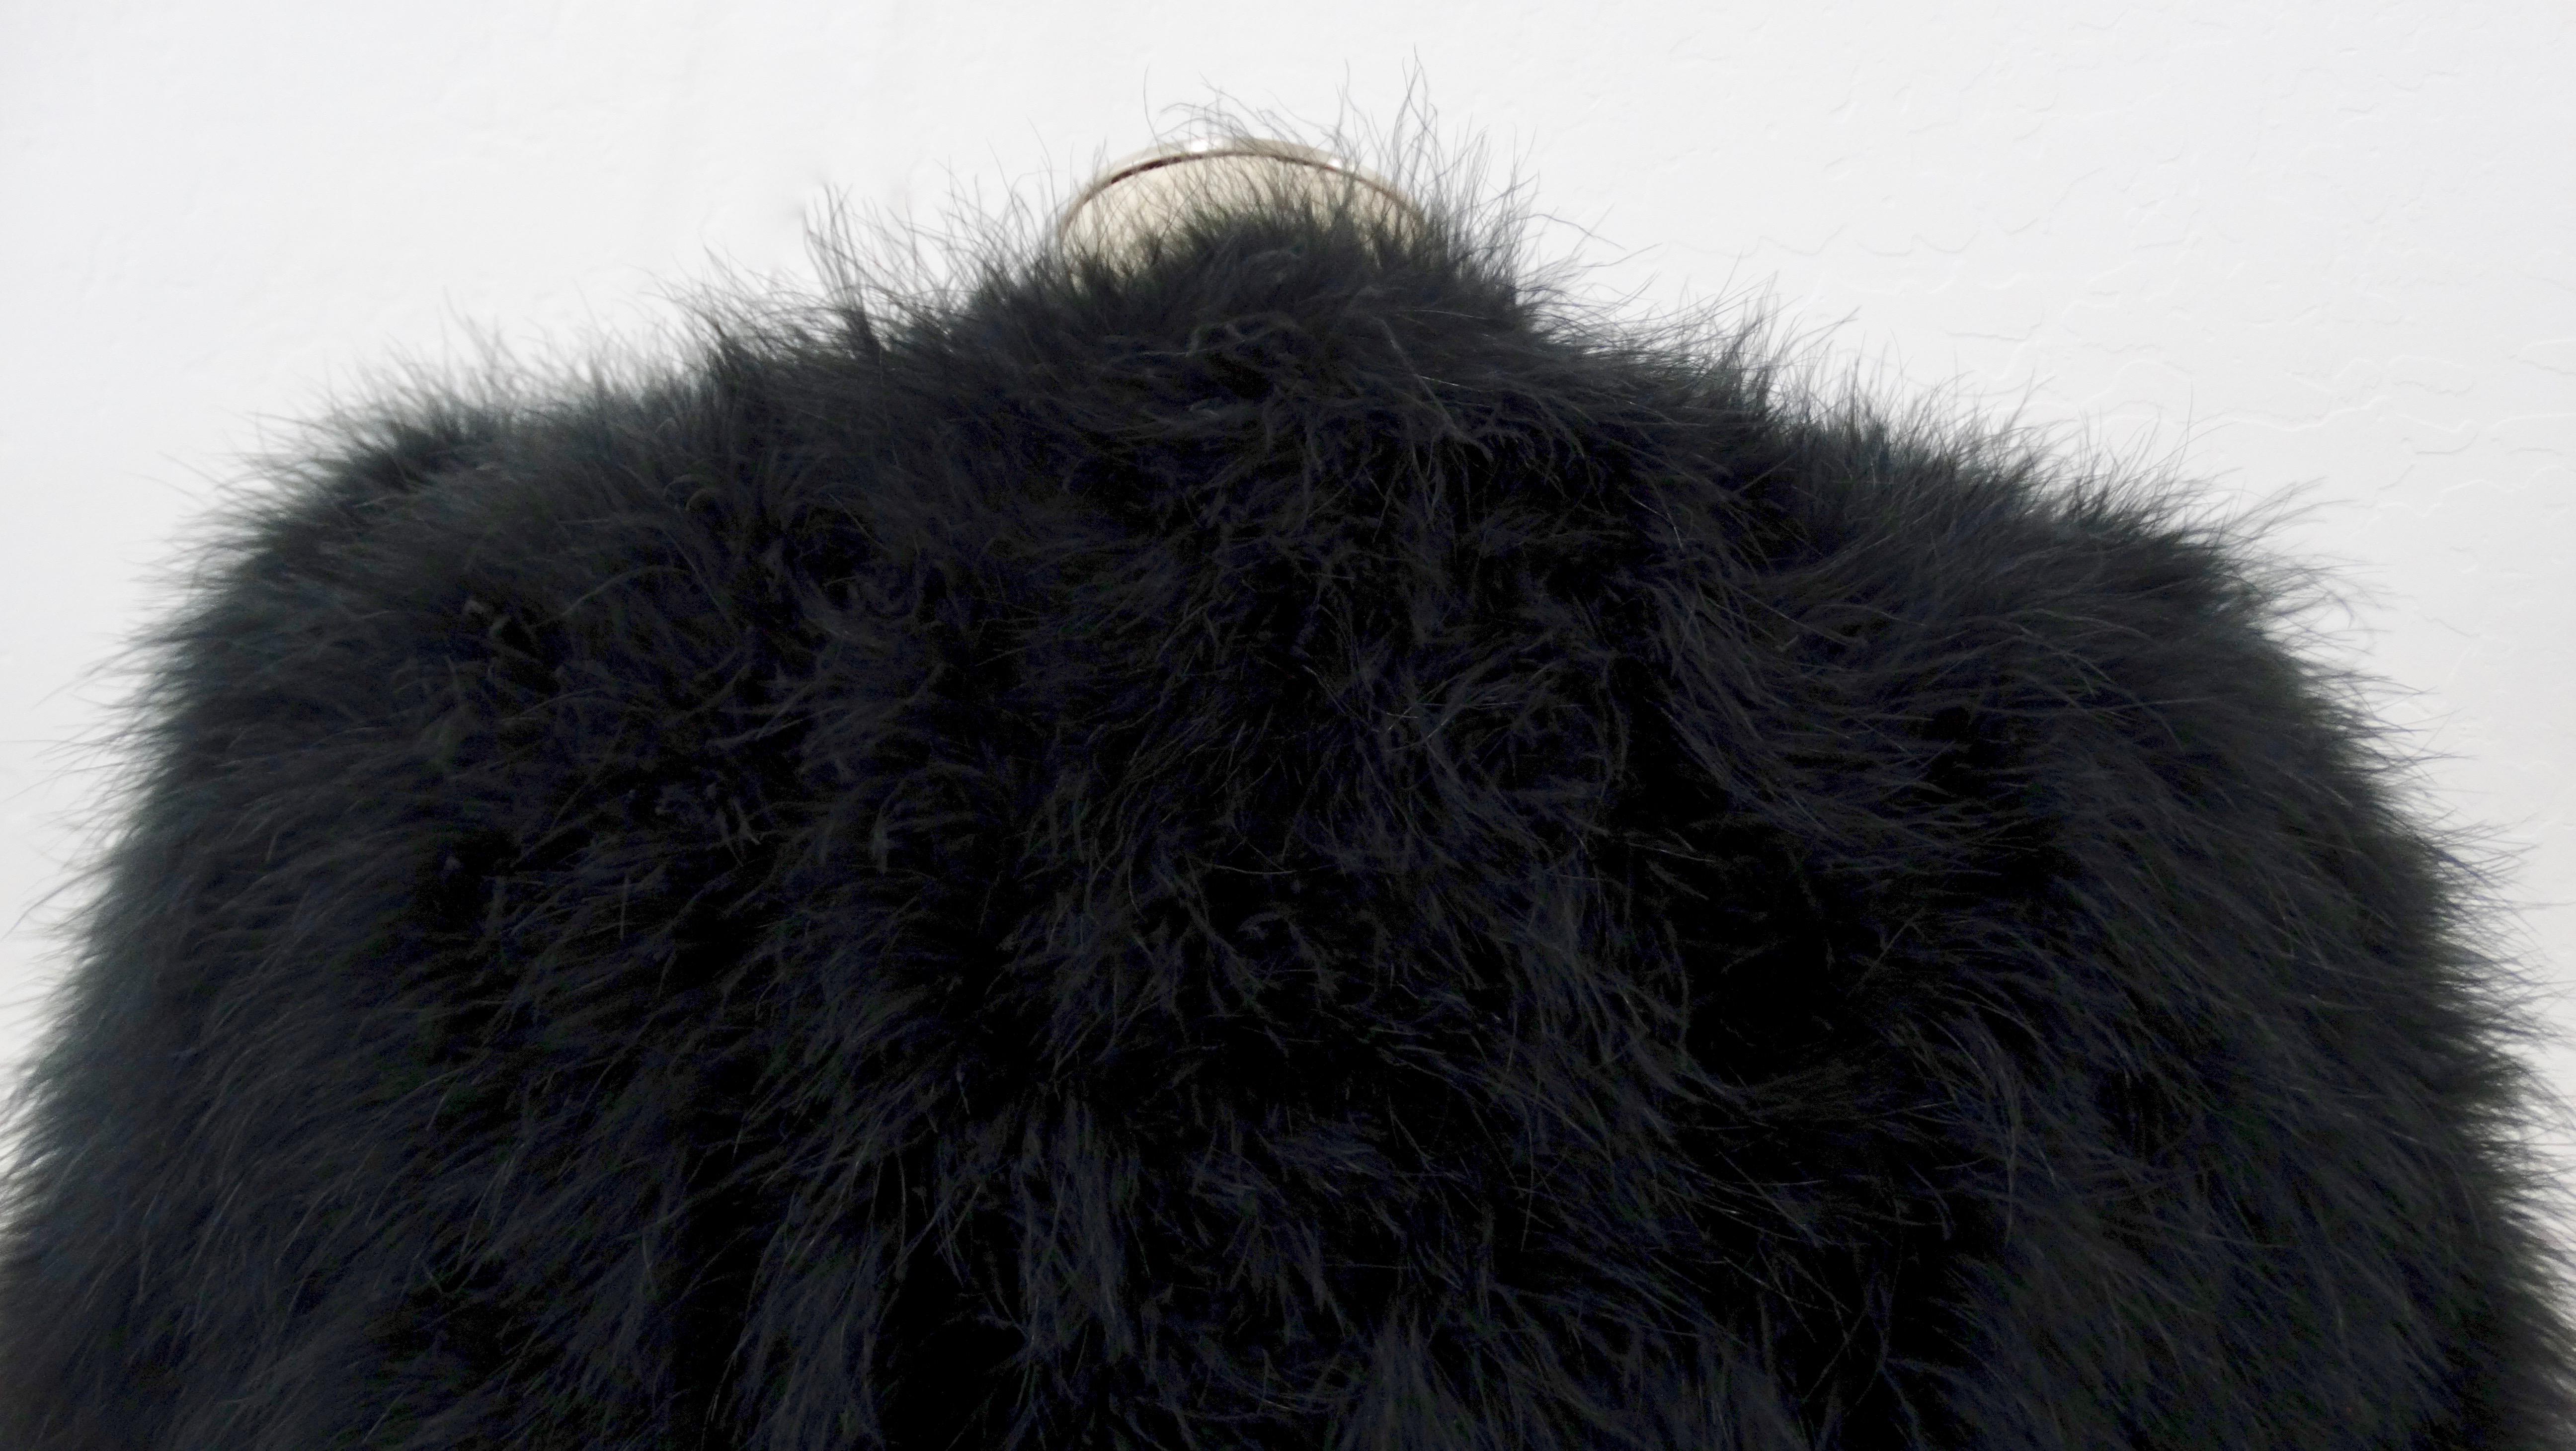 Women's or Men's Sonia Rykiel 1980s Black Marabou Feather Coat